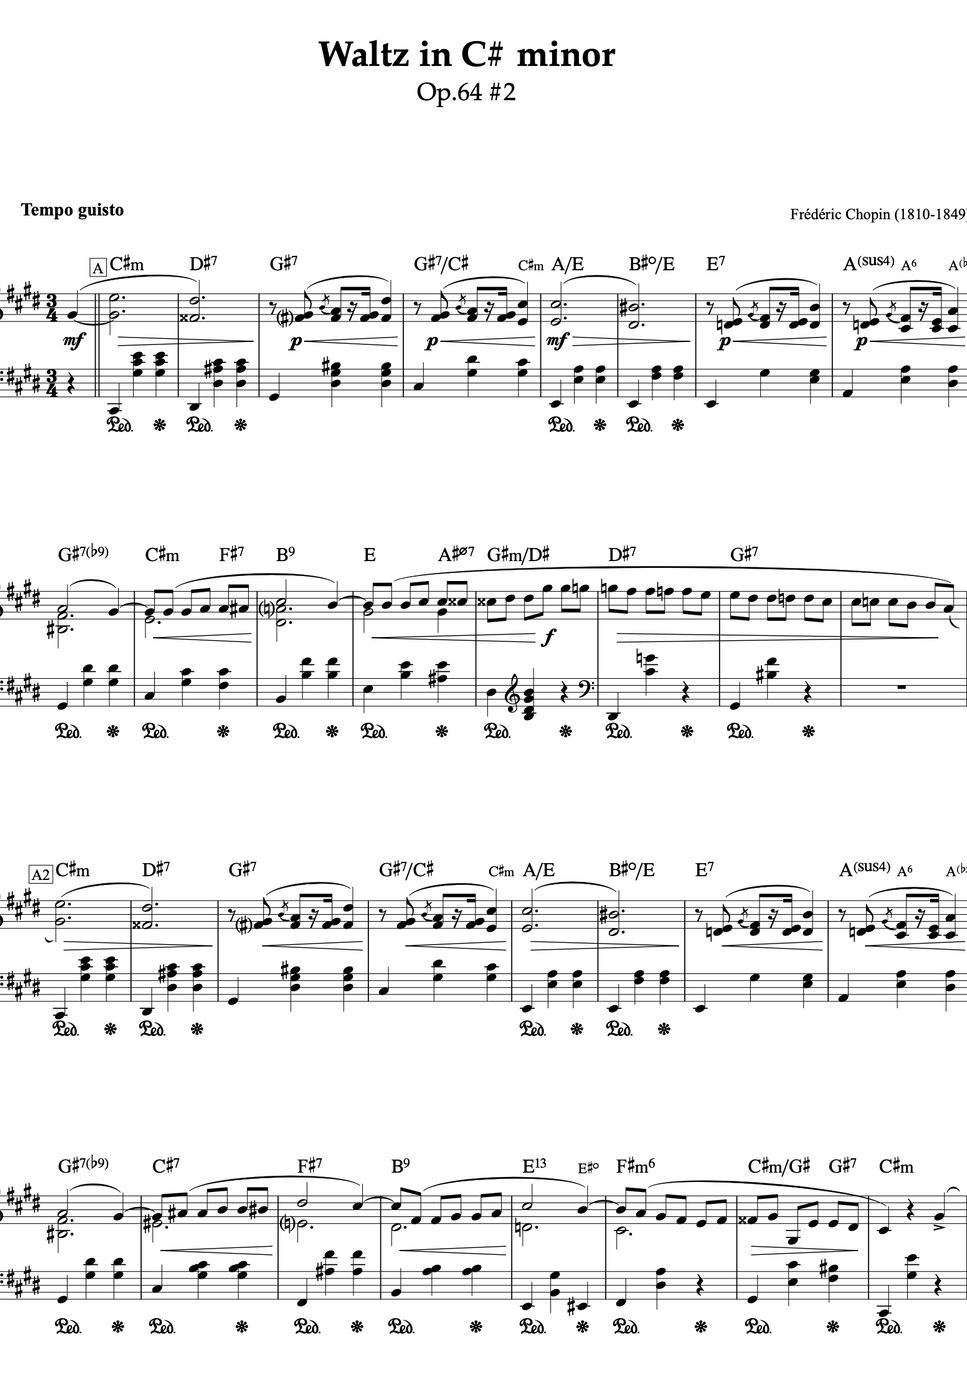 ショパン - 【ジャズコード付き】Waltz in C# minor Op.64 No.2 - Frederic Chopin  (ショパン作曲『ワルツ7番』コード付きピアノ譜) (ピアノ・ソロ/クラシック/コード付き) by ebony-ivory